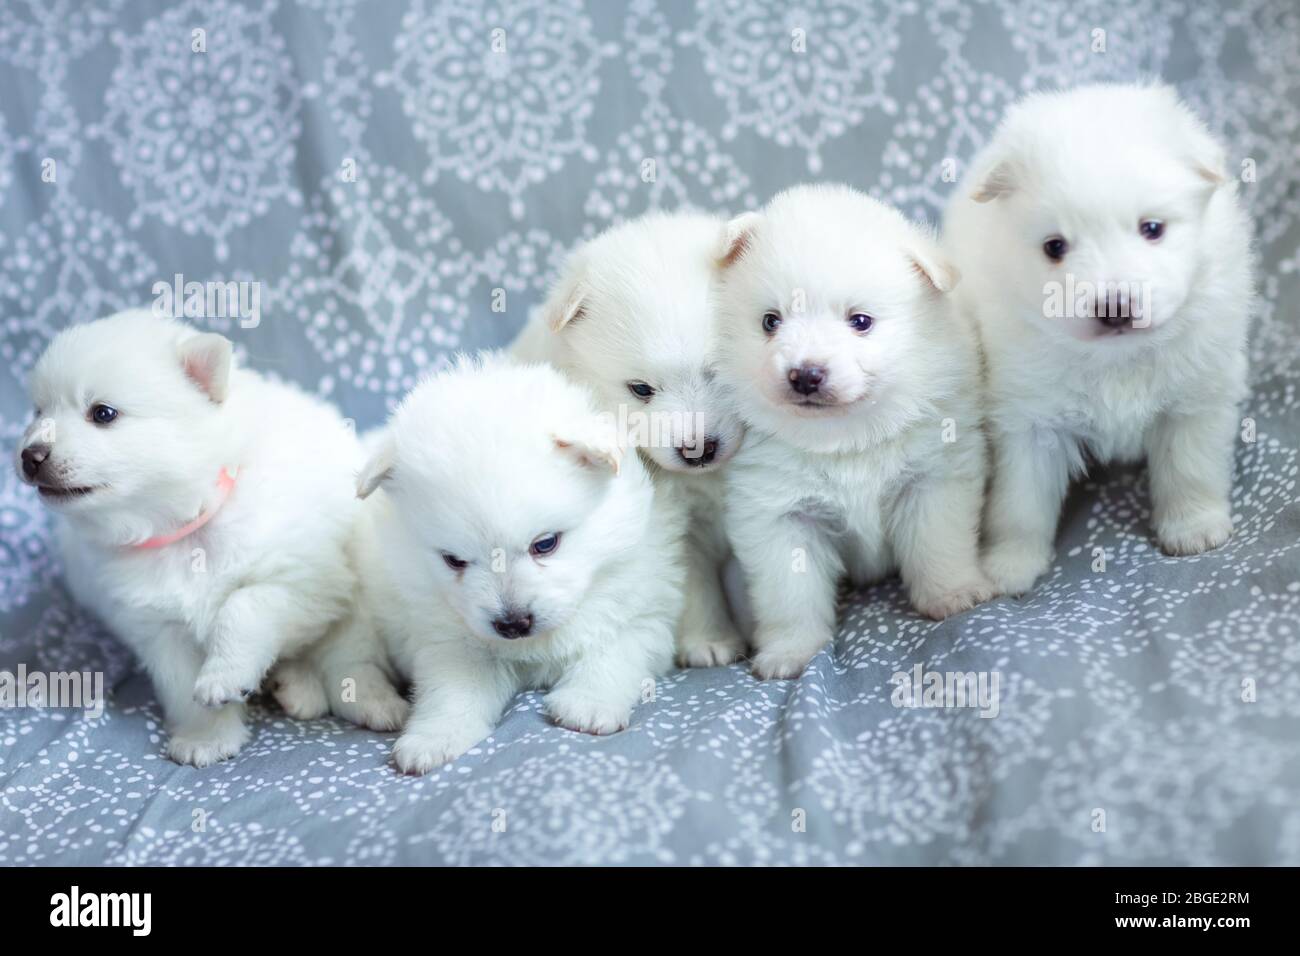 Adorable chiots blancs en forme de spitz sur la couverture. Meilleur ami pour les enfants Banque D'Images